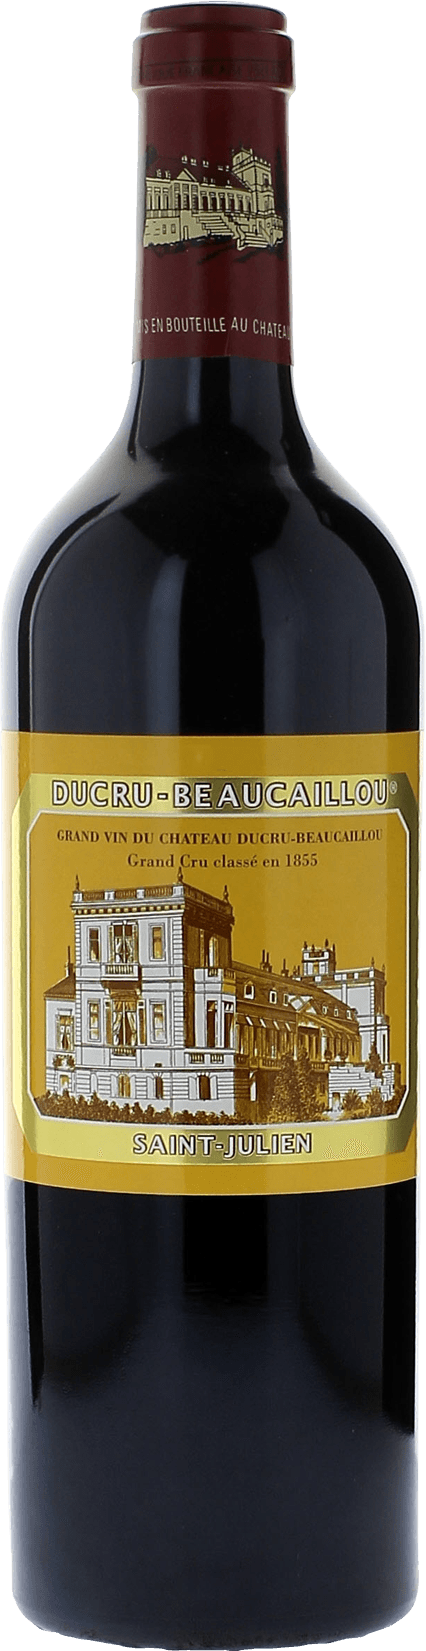 Ducru beaucaillou 1984 2me Grand cru class Saint-Julien, Bordeaux rouge